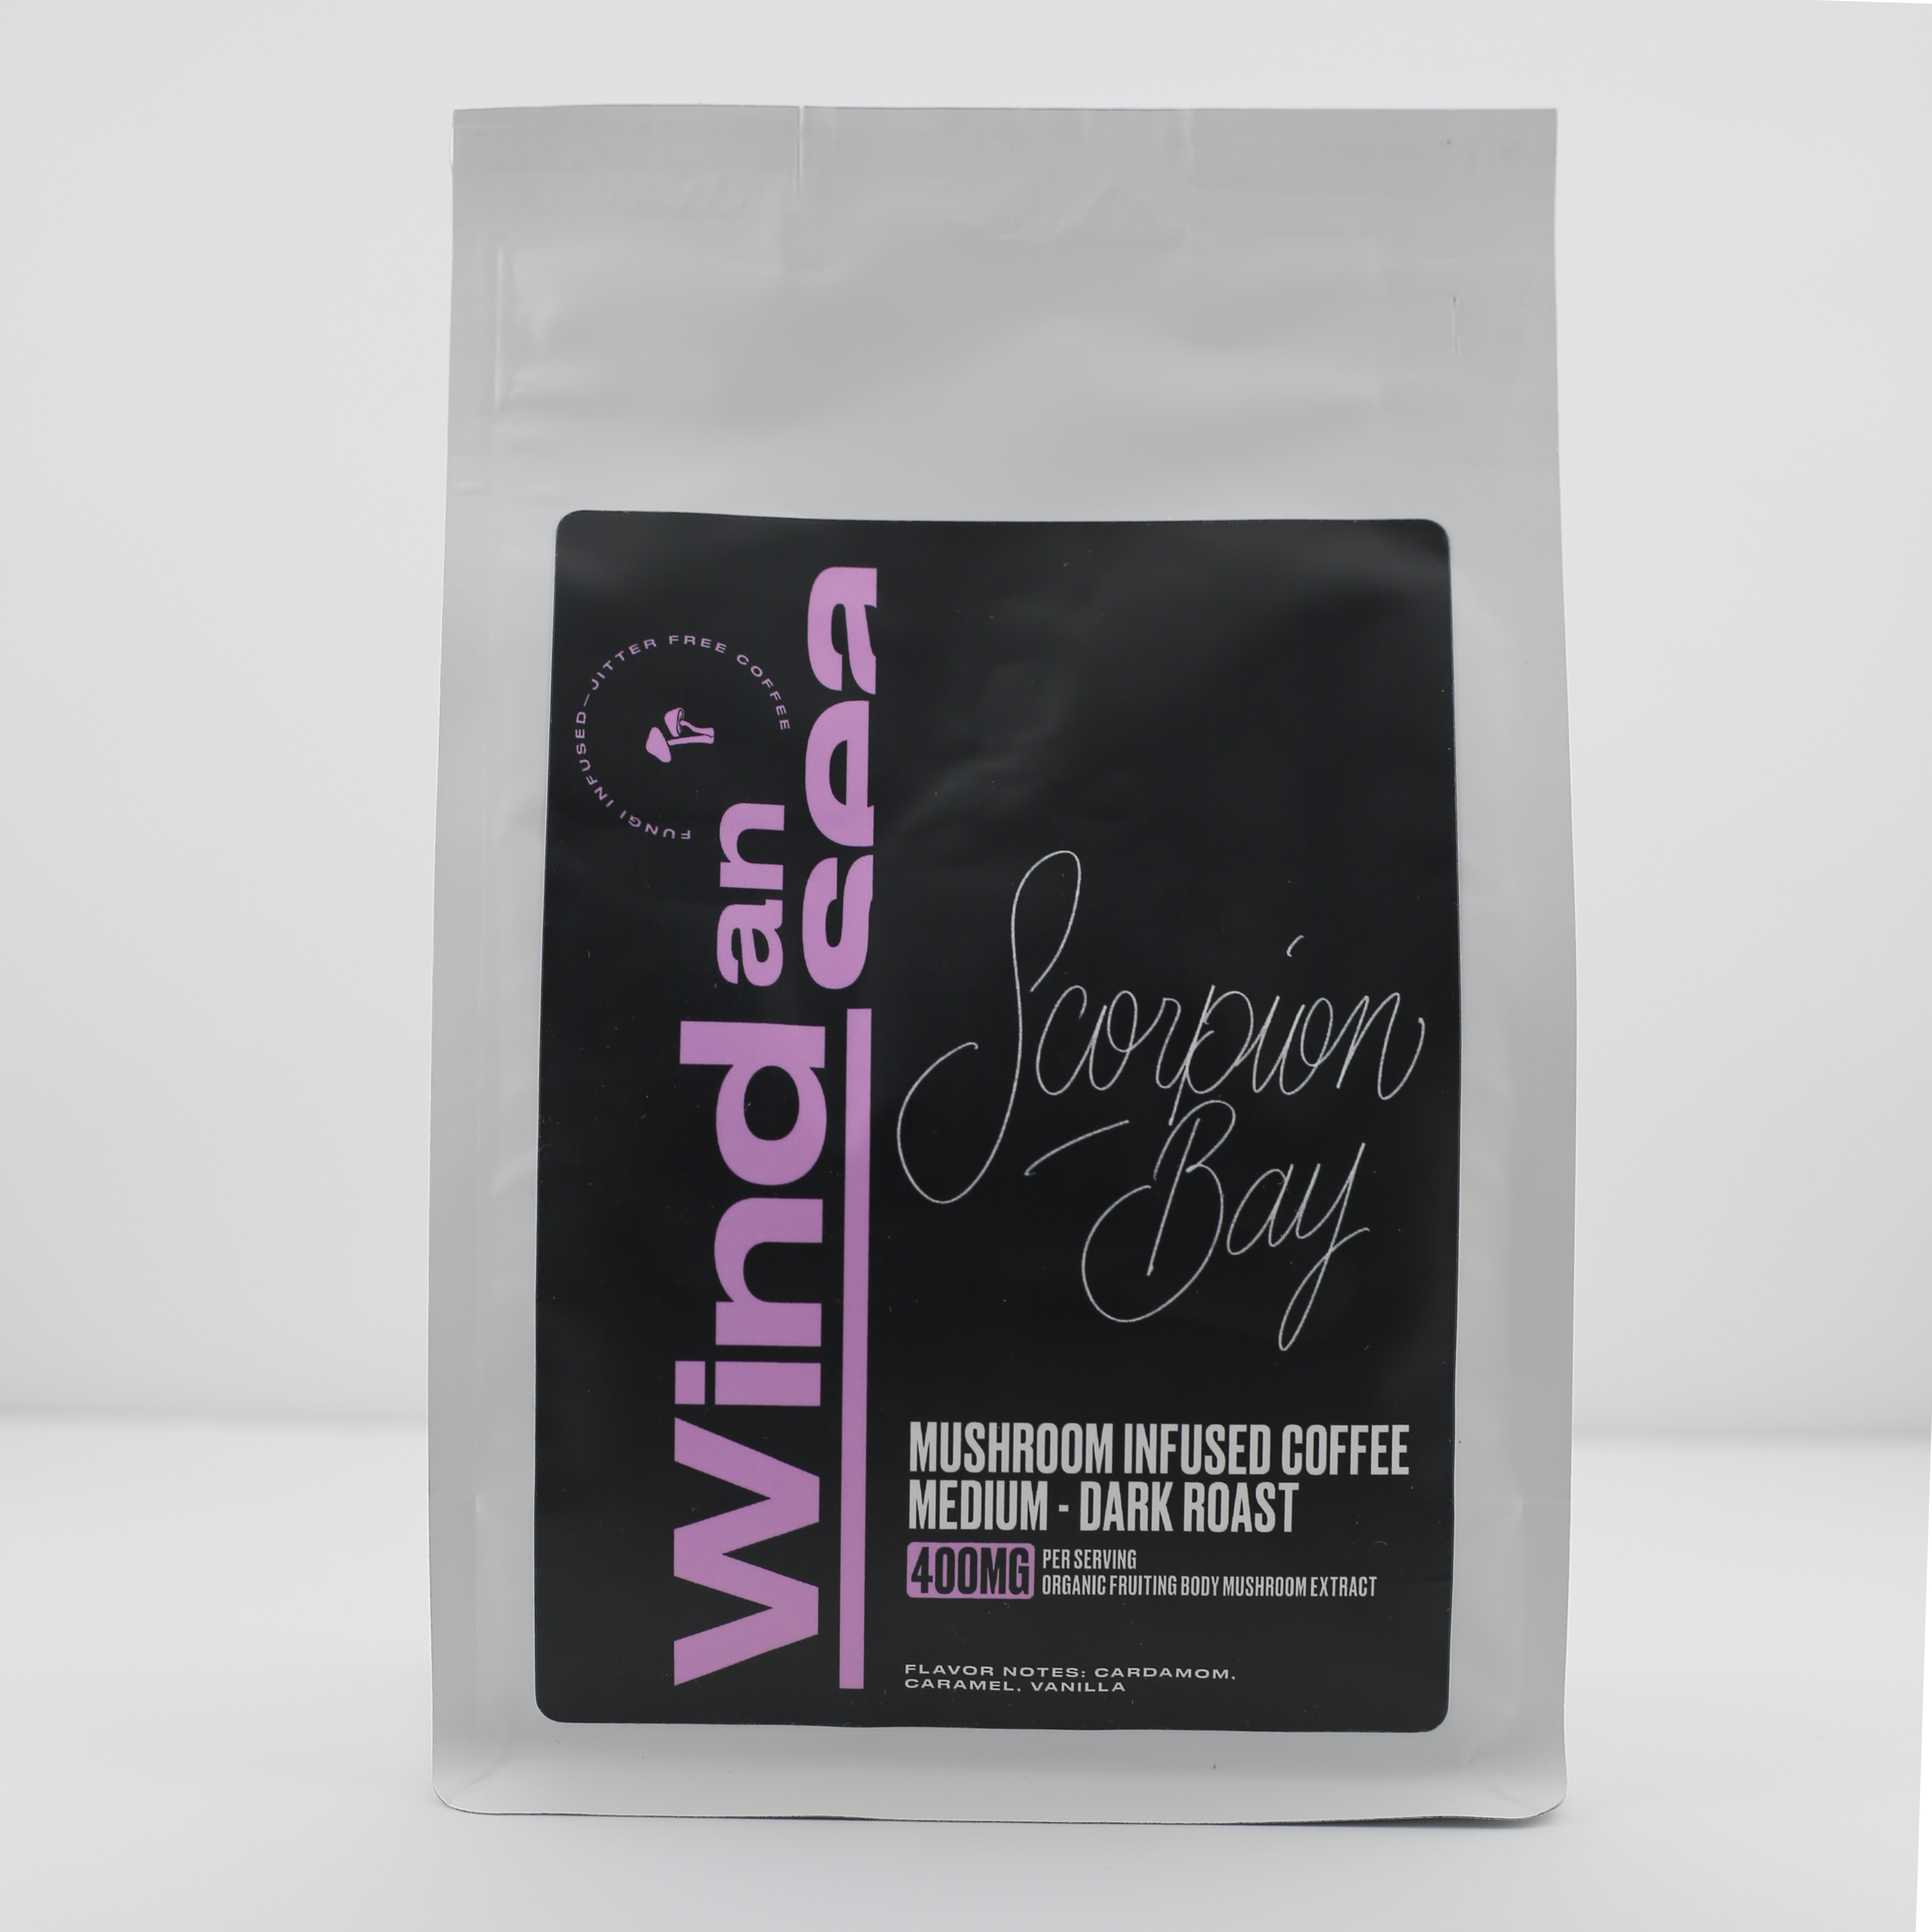 Scorpion Bay - Dark Roast Adaptogenic Mushroom Infused Coffee